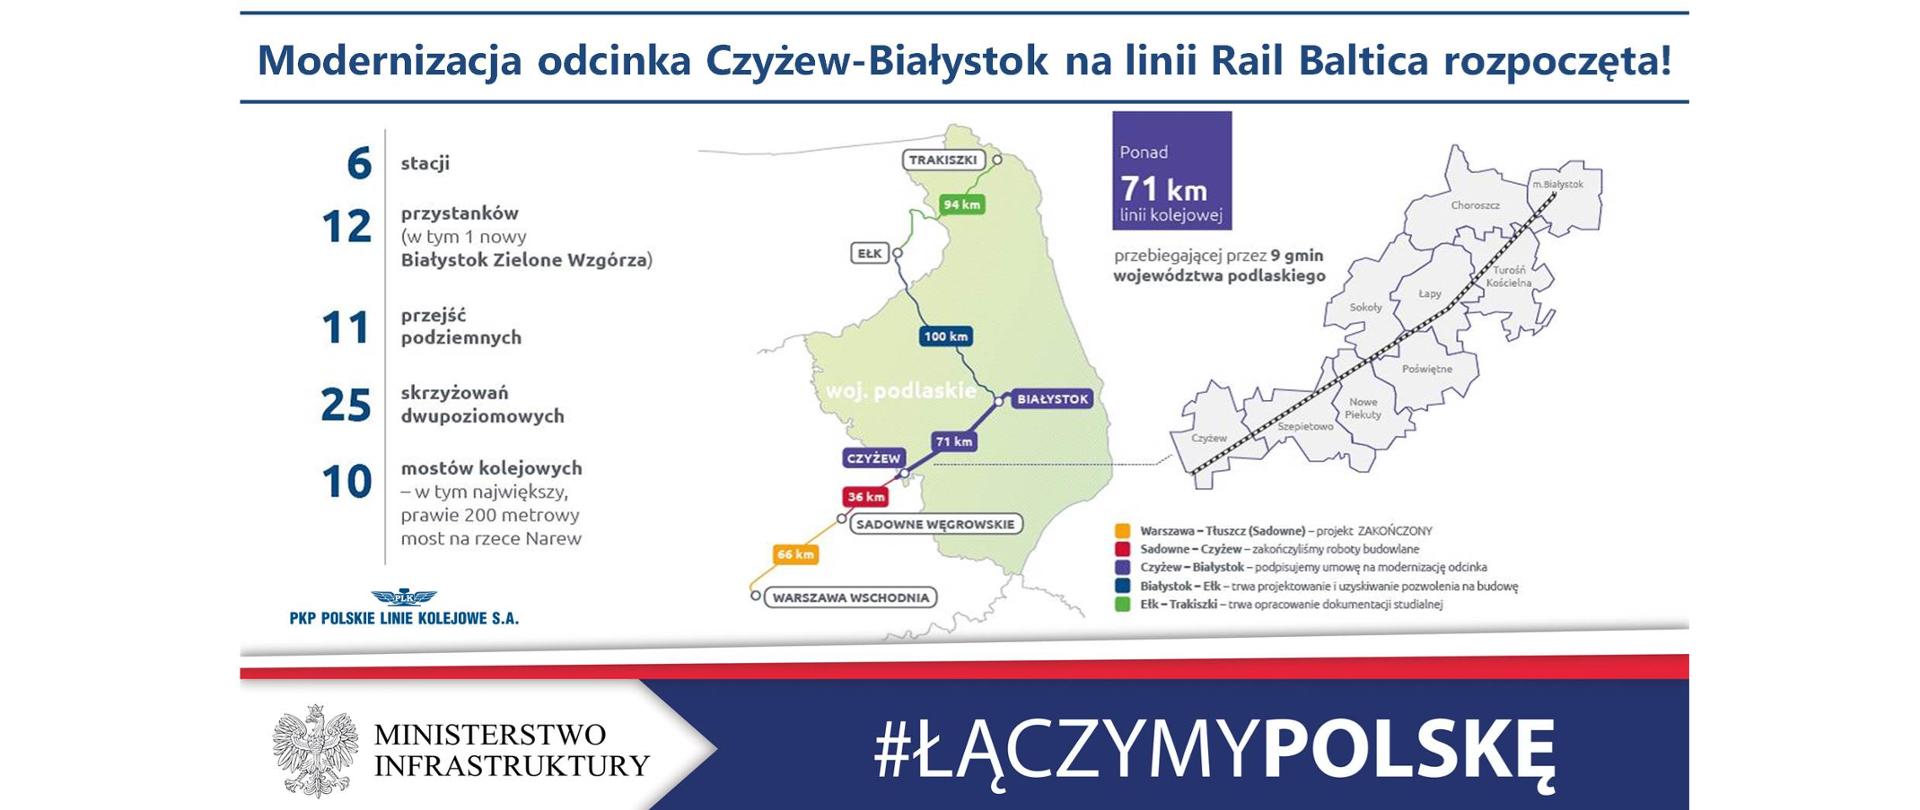 Modernizacja linii kolejowej na odcinku Czyżew - Białystok - zakres prac